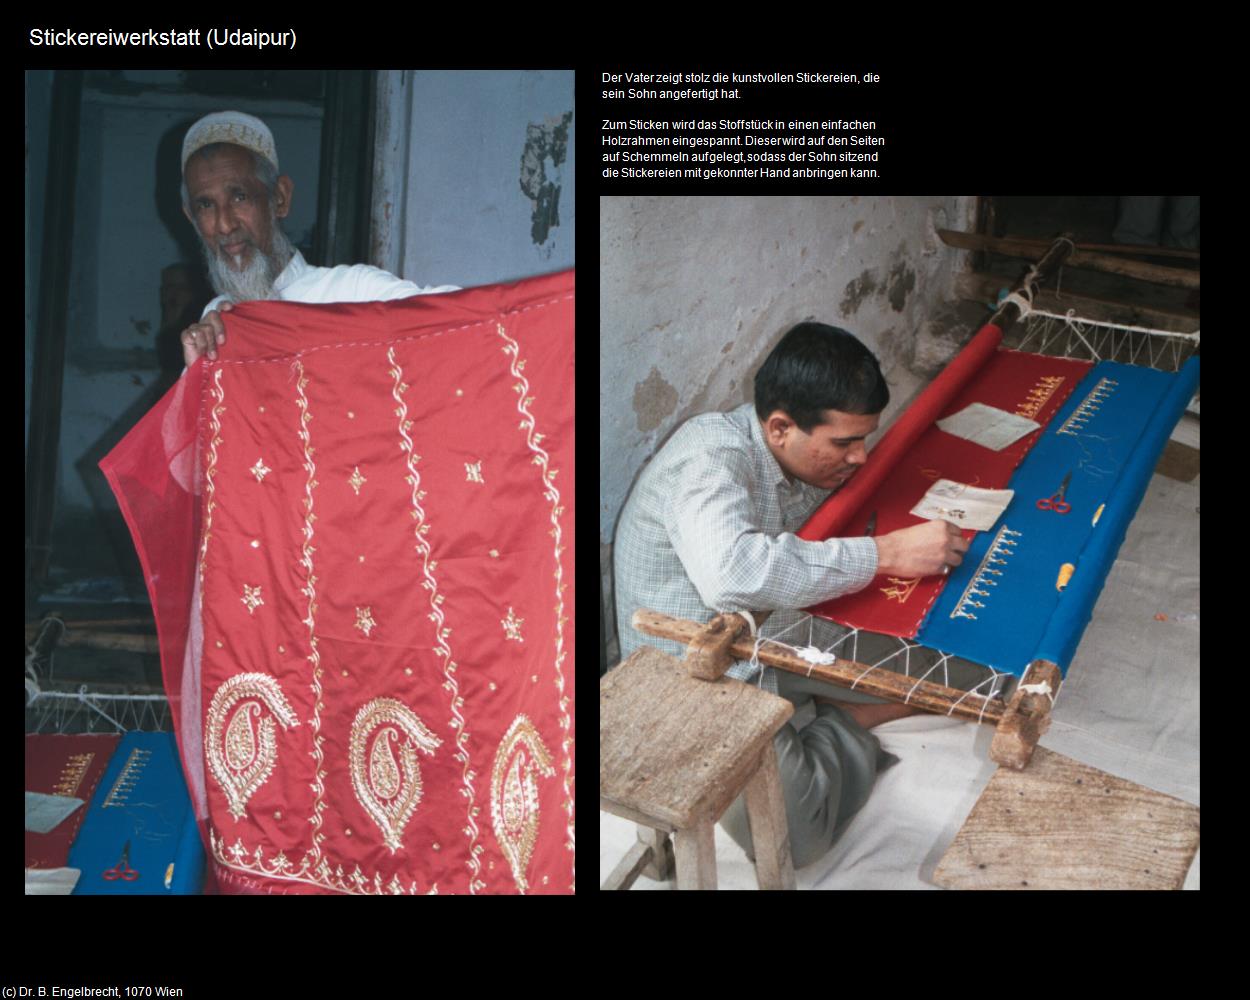 Stickereiwerkstatt (Udaipur) in Rajasthan - das Land der Könige